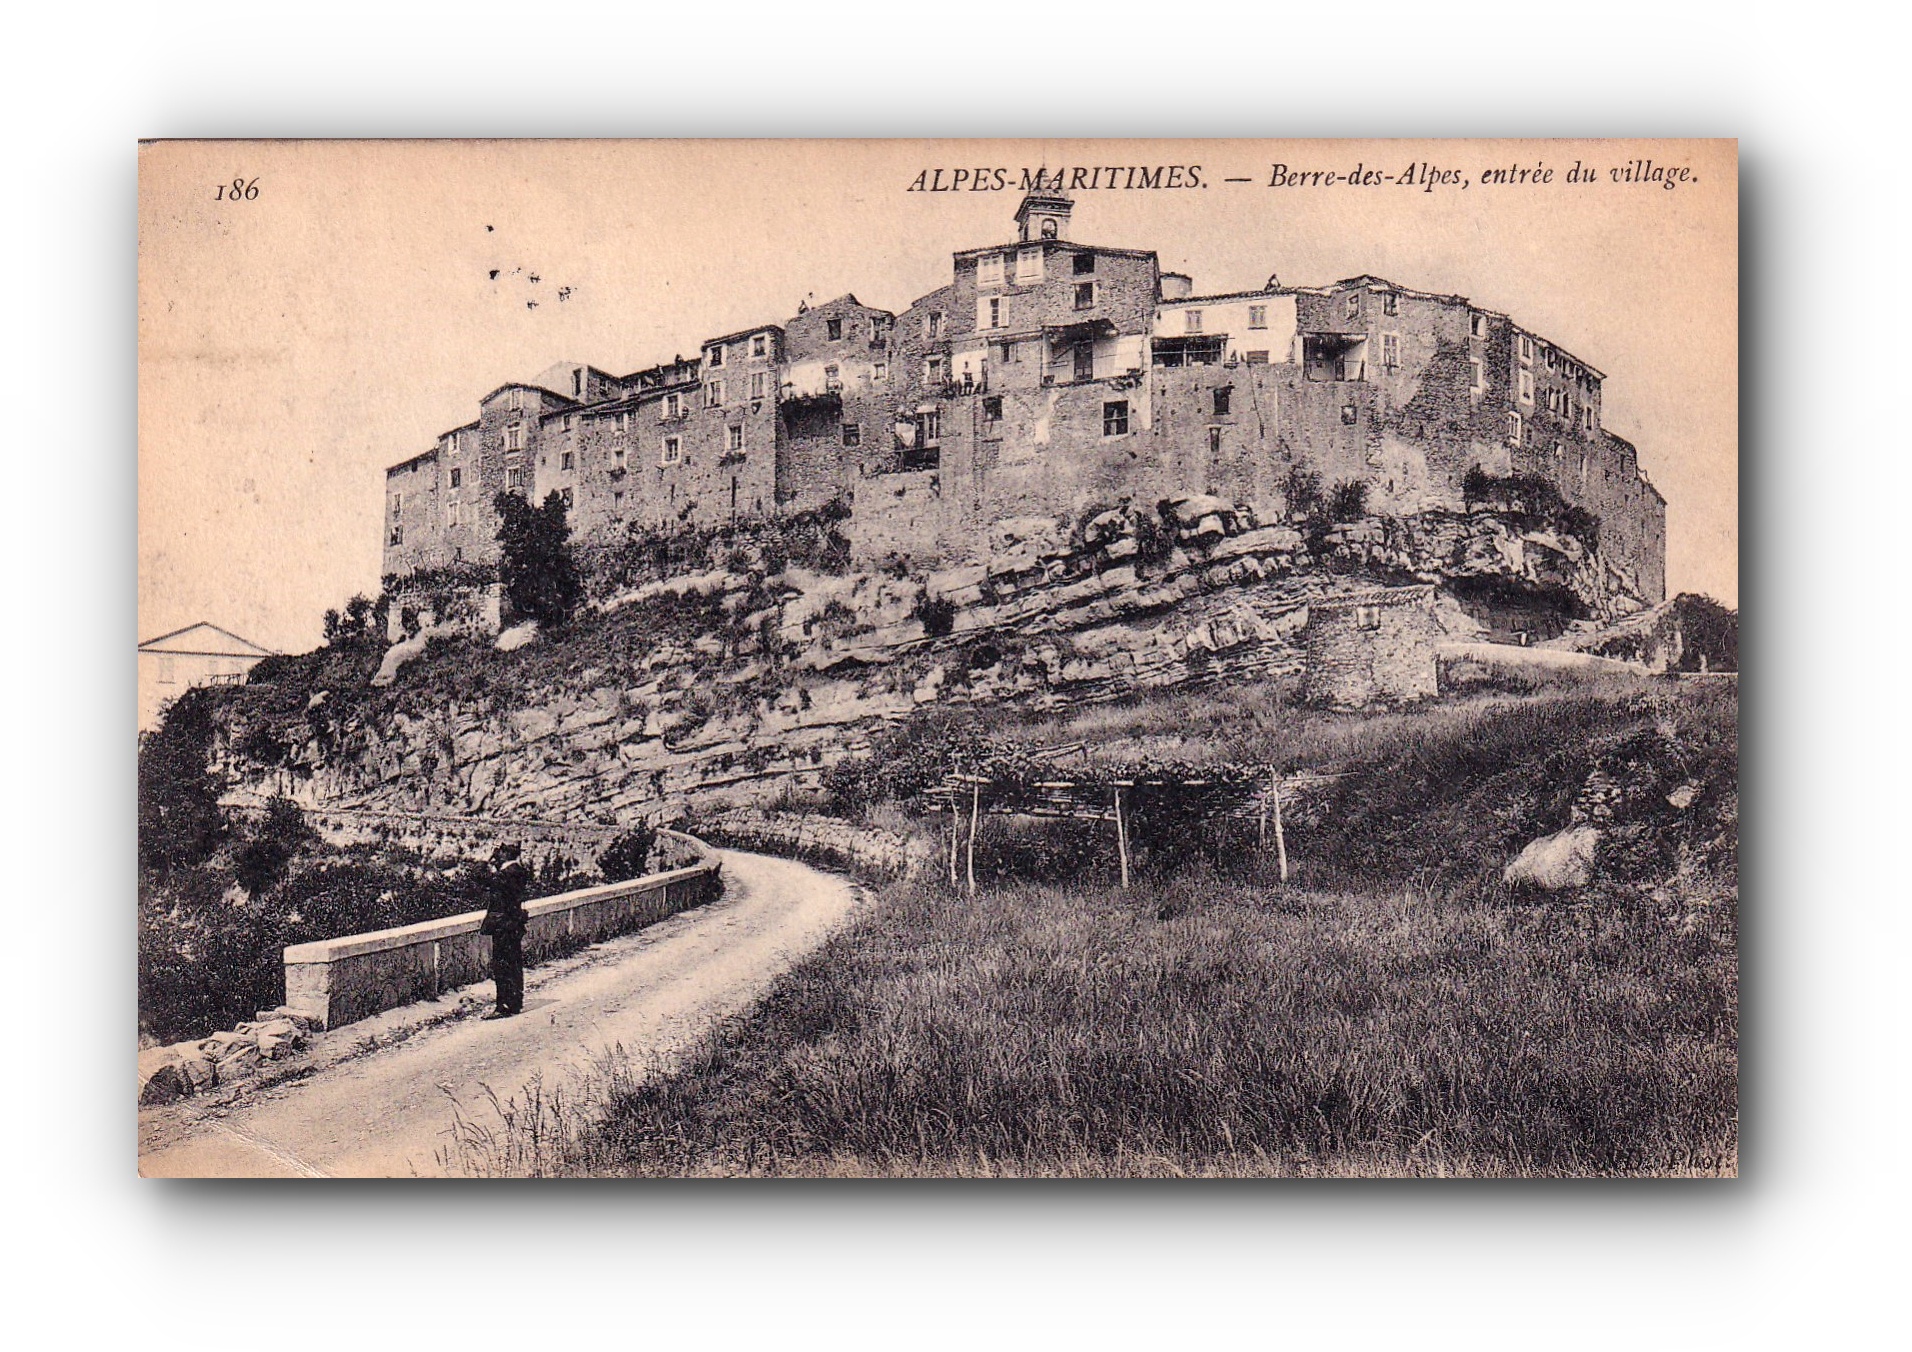 ALPES MARITIMES -  27.08.1901 - Berre des Alpes - Entrée du village - Eingang zum Dorf - Entrance to the village